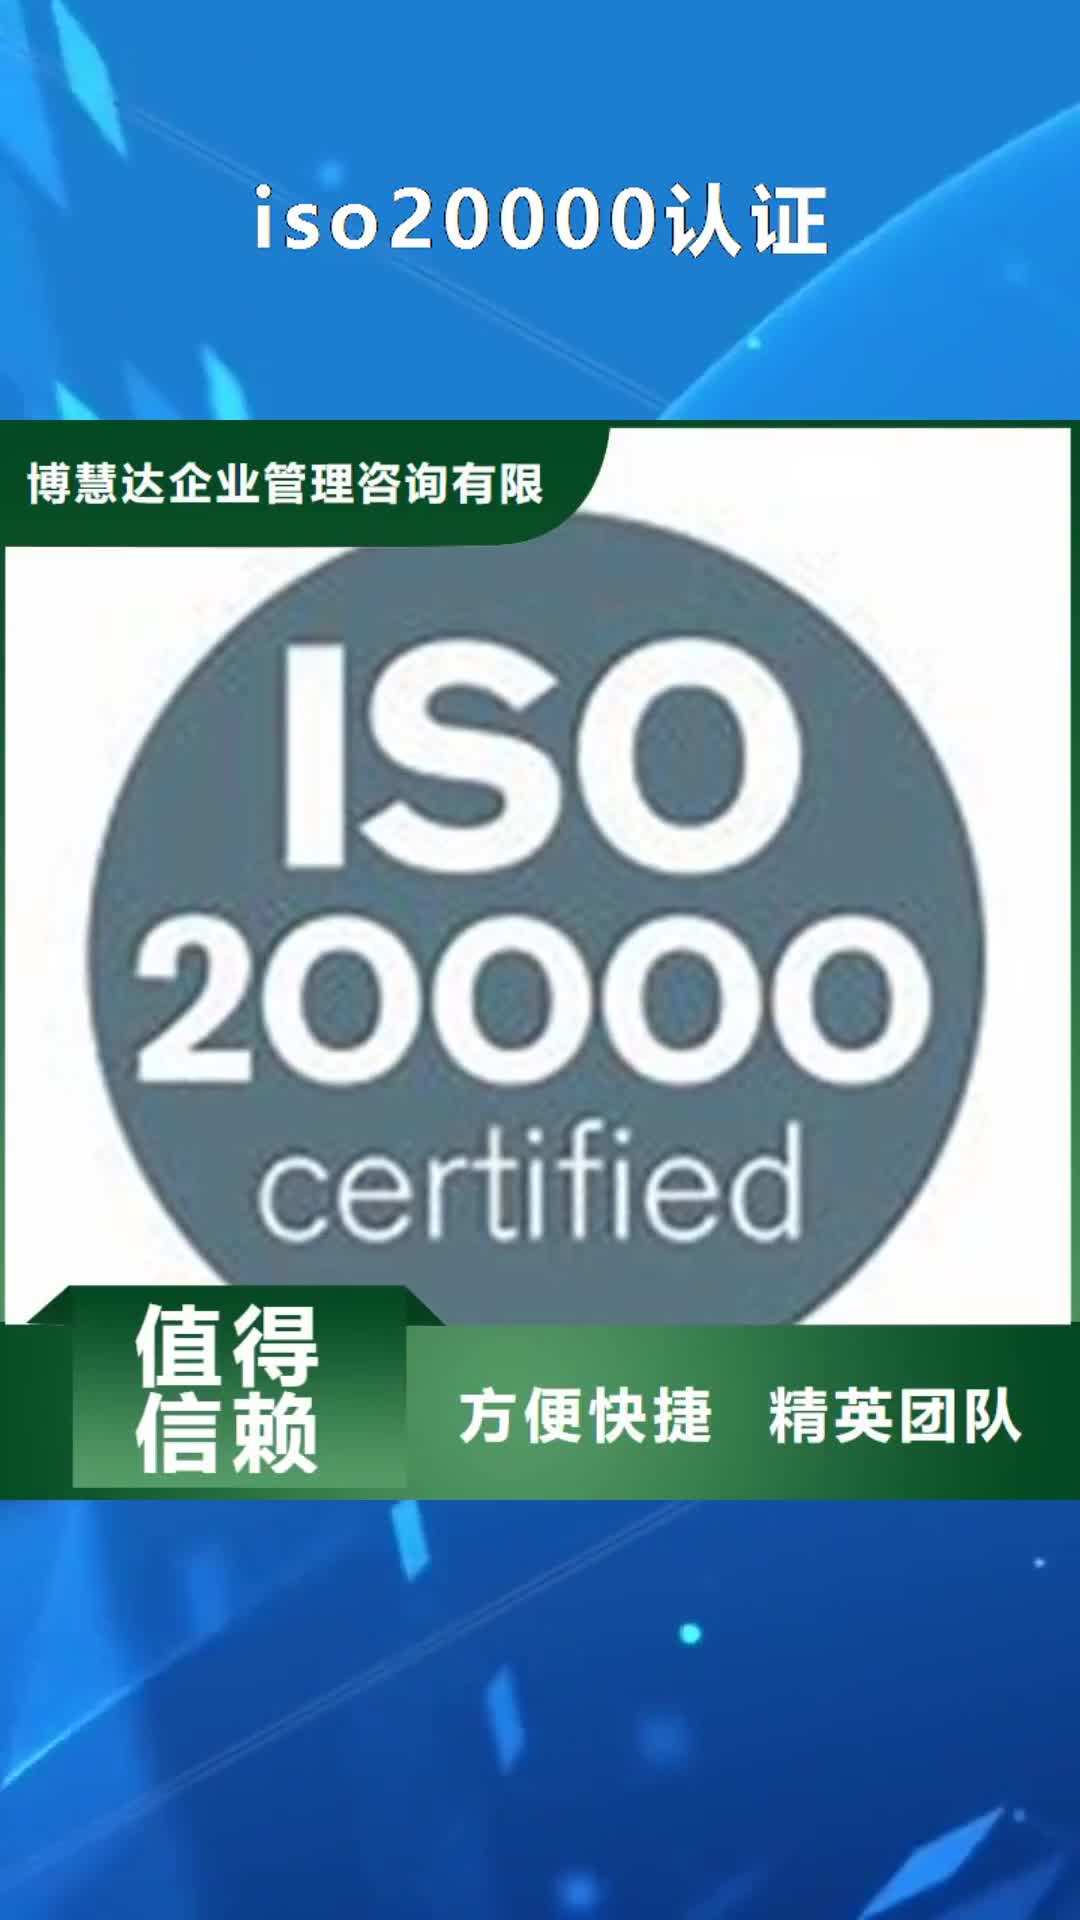 长沙 iso20000认证,【HACCP认证】正规公司